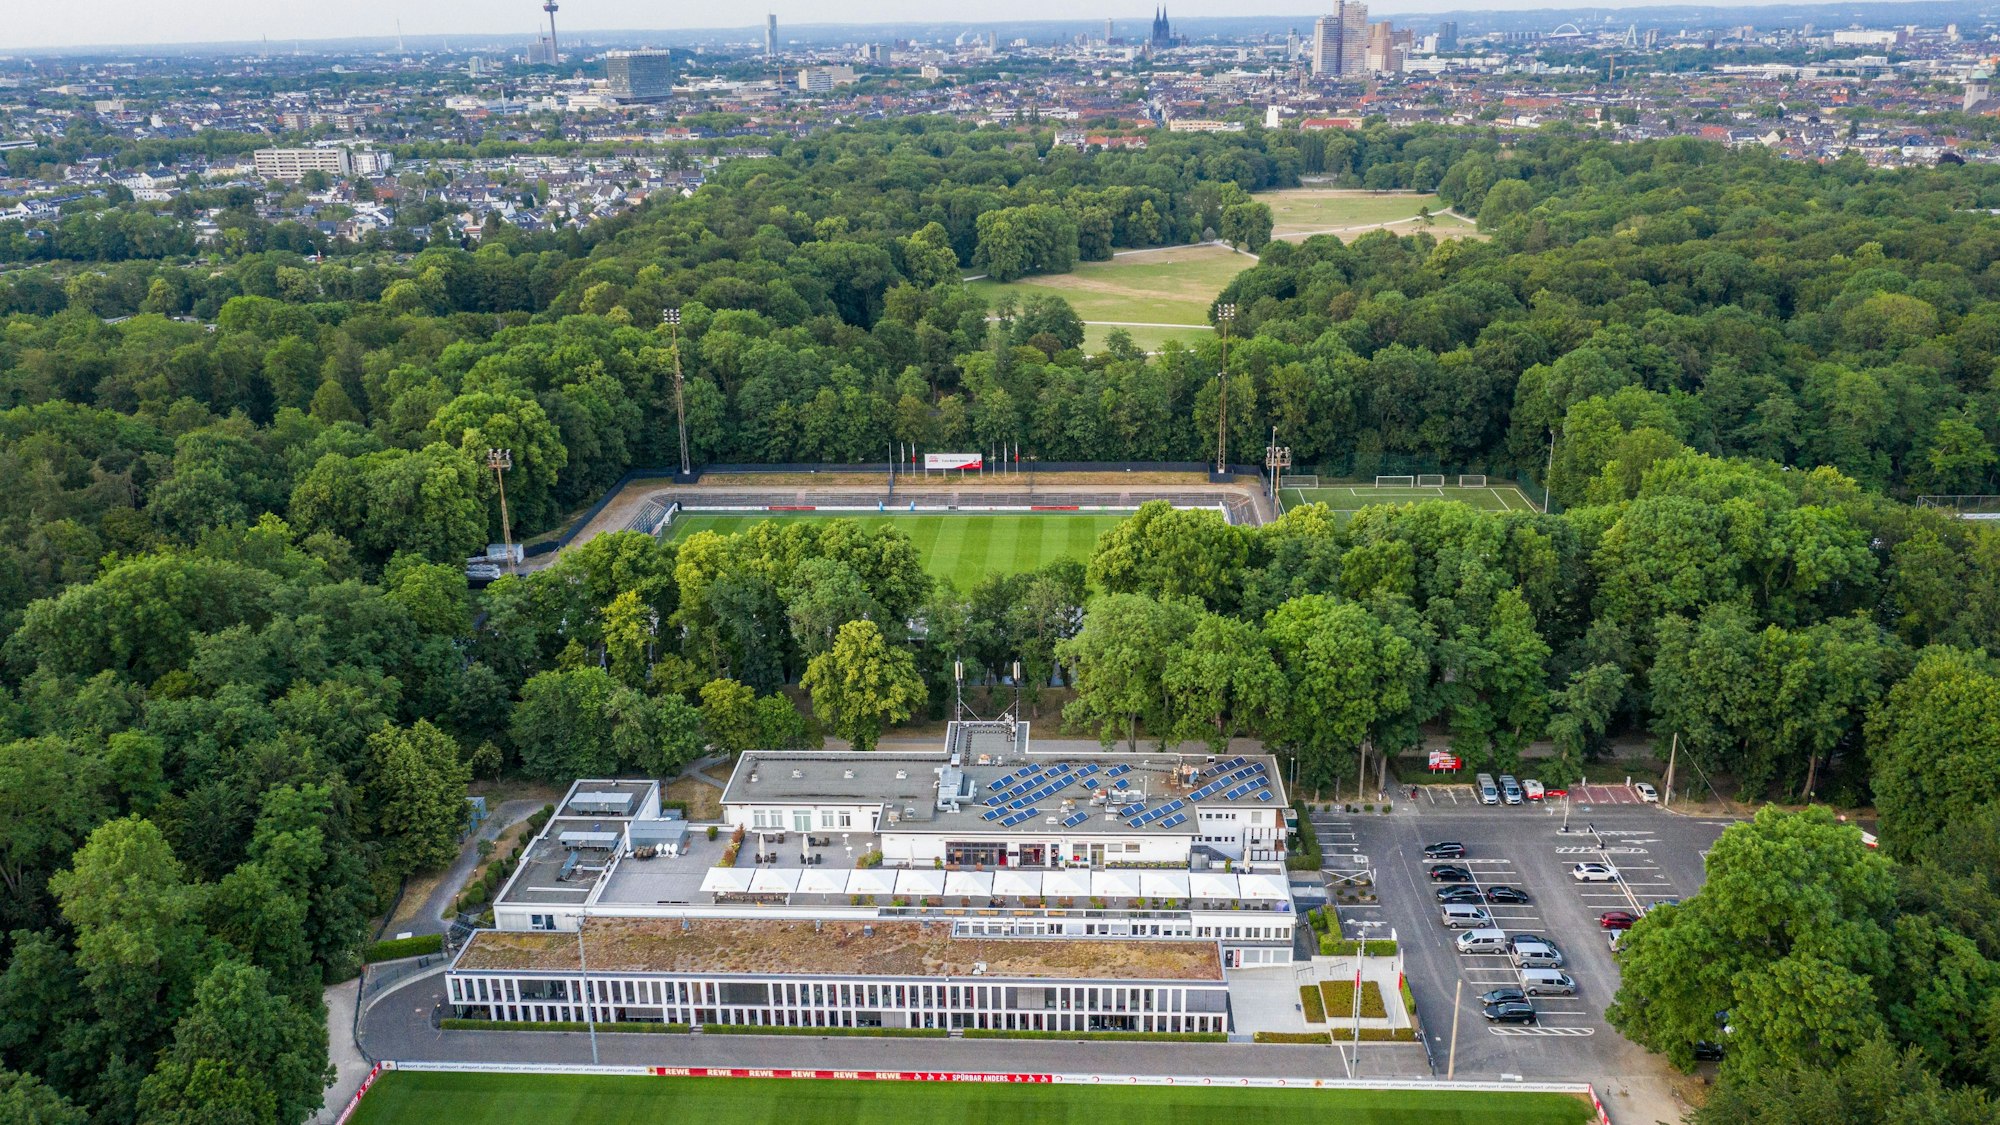 Das Geißbockheim genannte Clubhaus des Fußballverein 1. FC Köln mit dem Trainingsplatz 1 (vorne) und dem Franz-Kremer-Stadion (hinten) im Äußeren Grüngürtel. Im Hintergrund sind das Stadtzentrum und der Beethovenpark zu erkennen.